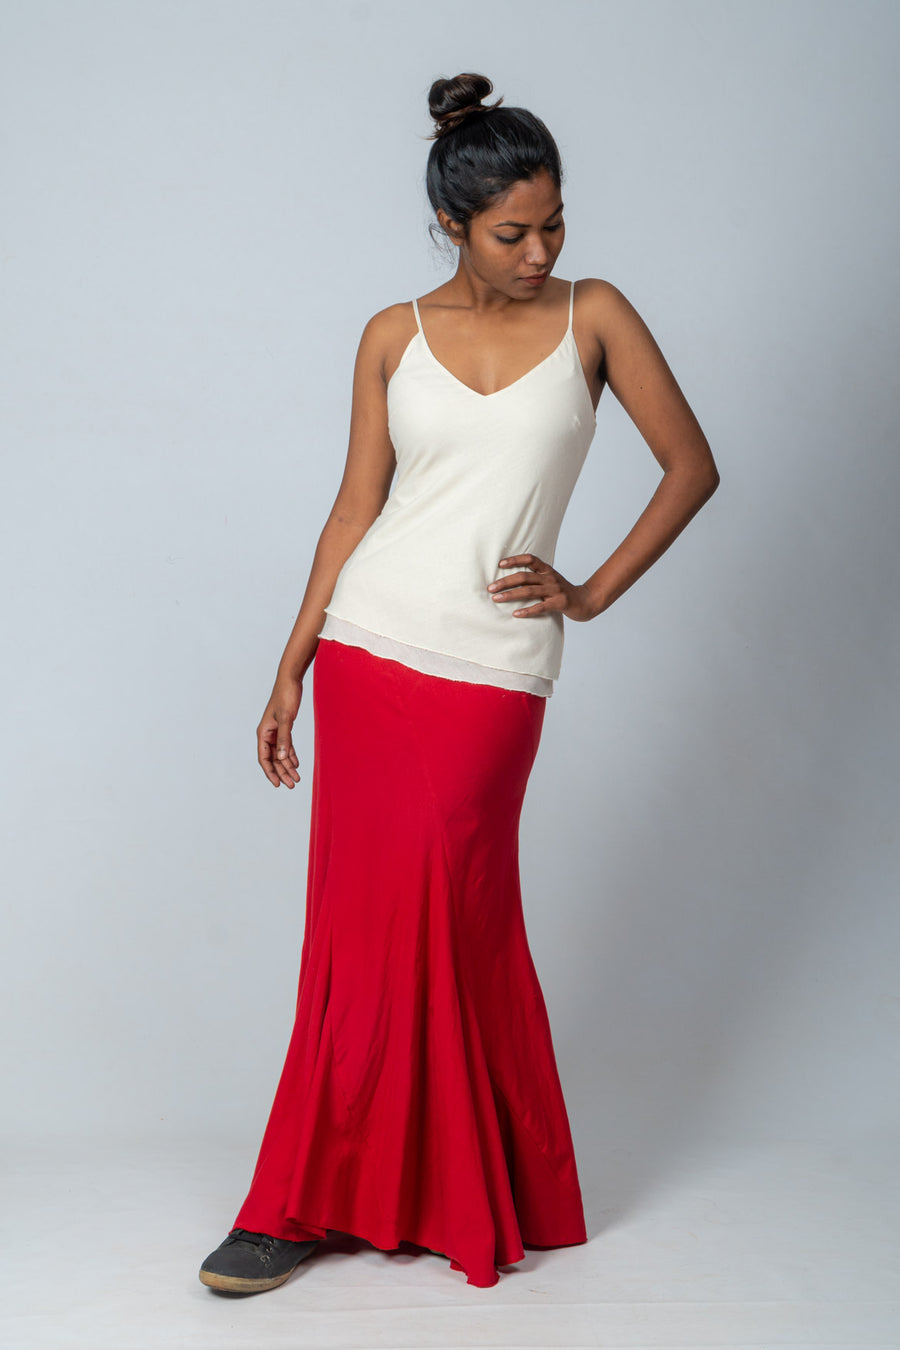 Red Handloom Cotton Long Skirt- KAKOLI LONG